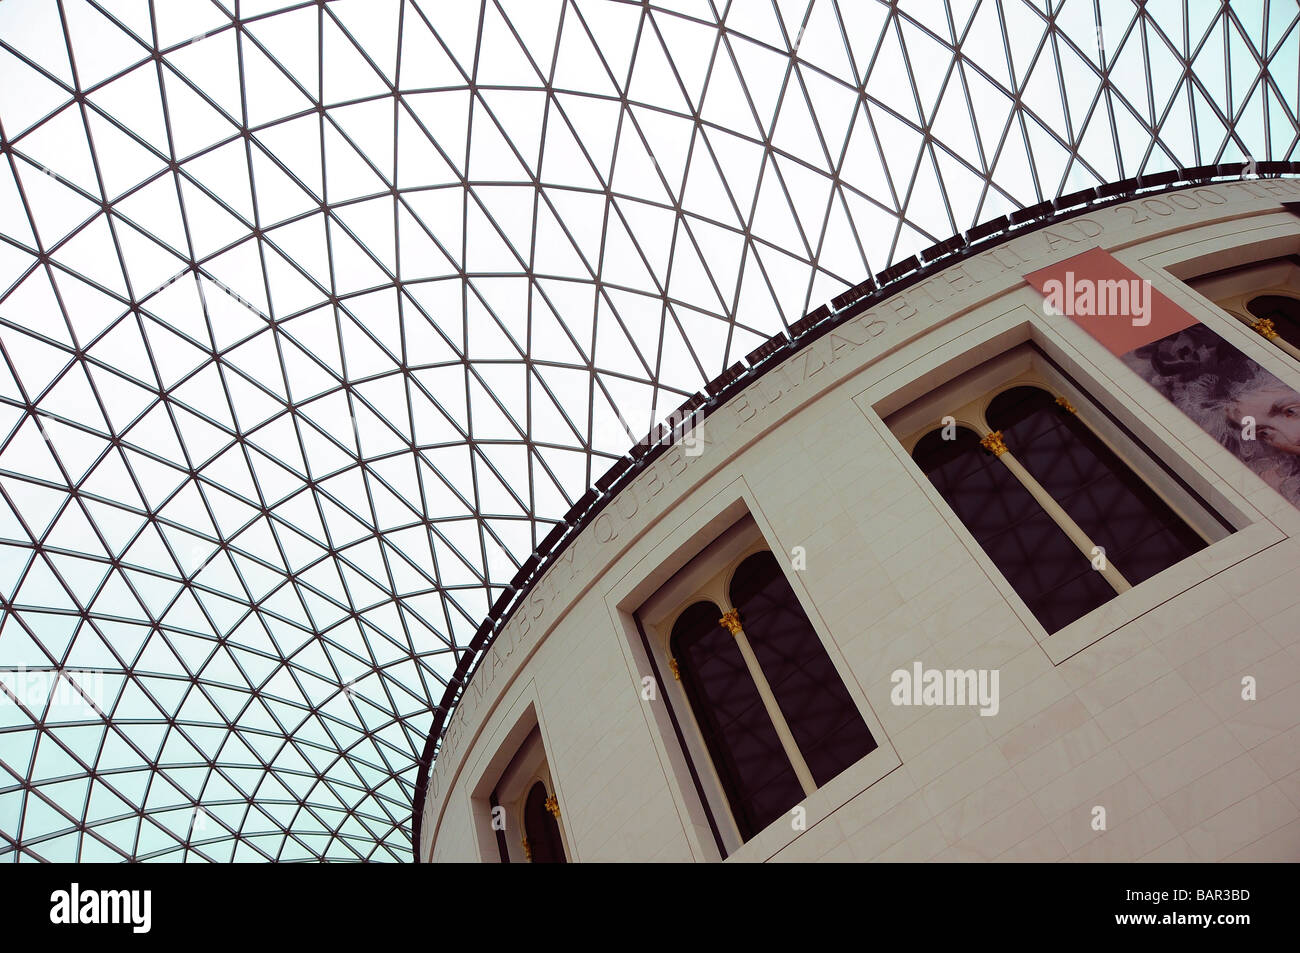 La grande cour toit au British Museum, London, UK Banque D'Images